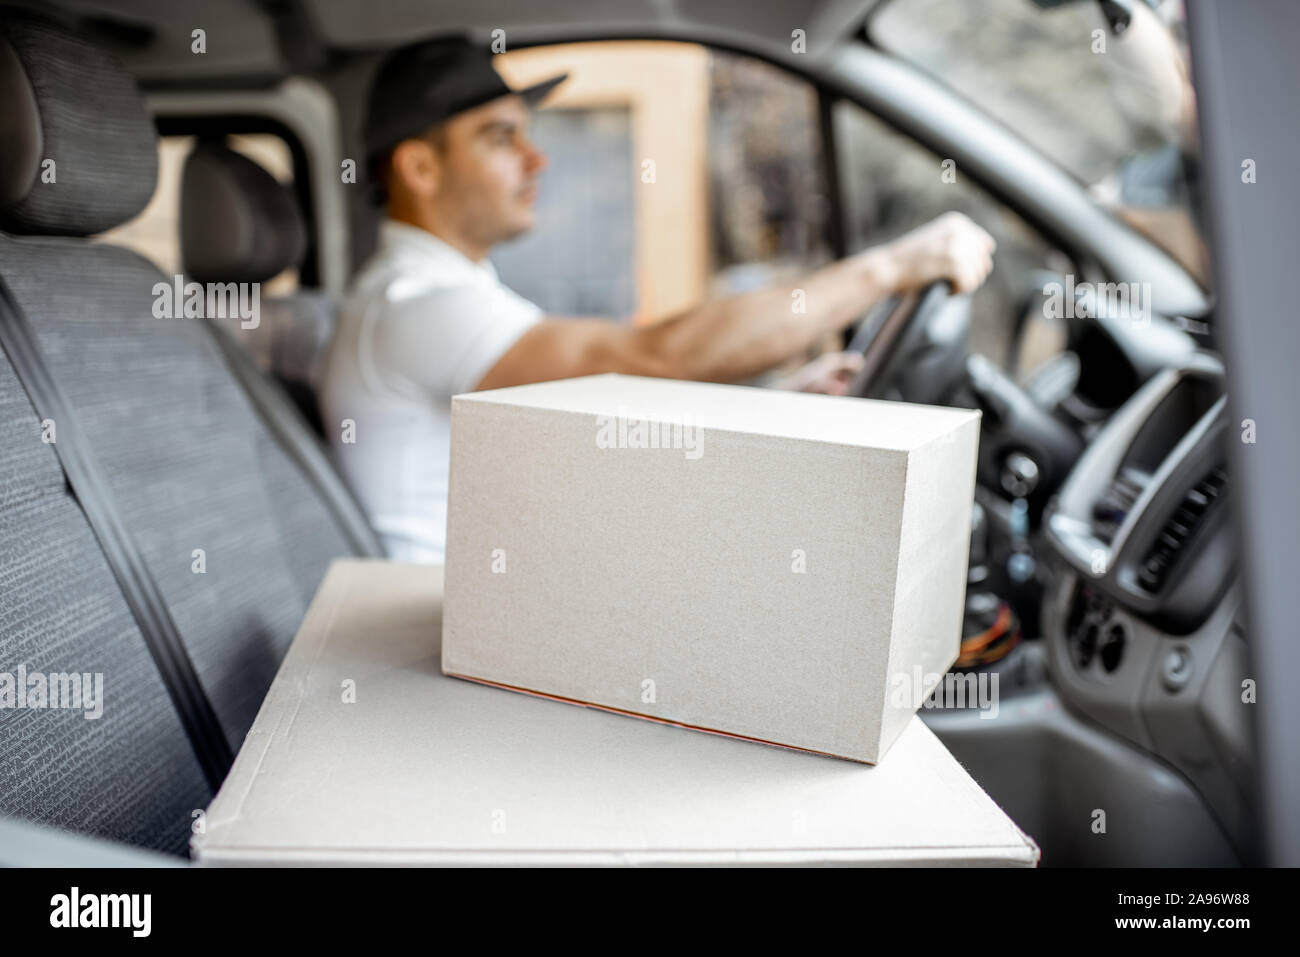 Lieferung Mann, der Cargo Fahrzeug mit Pakete auf dem Beifahrersitz, Bild konzentrierte sich auf die Kartons mit Leerzeichen Stockfoto